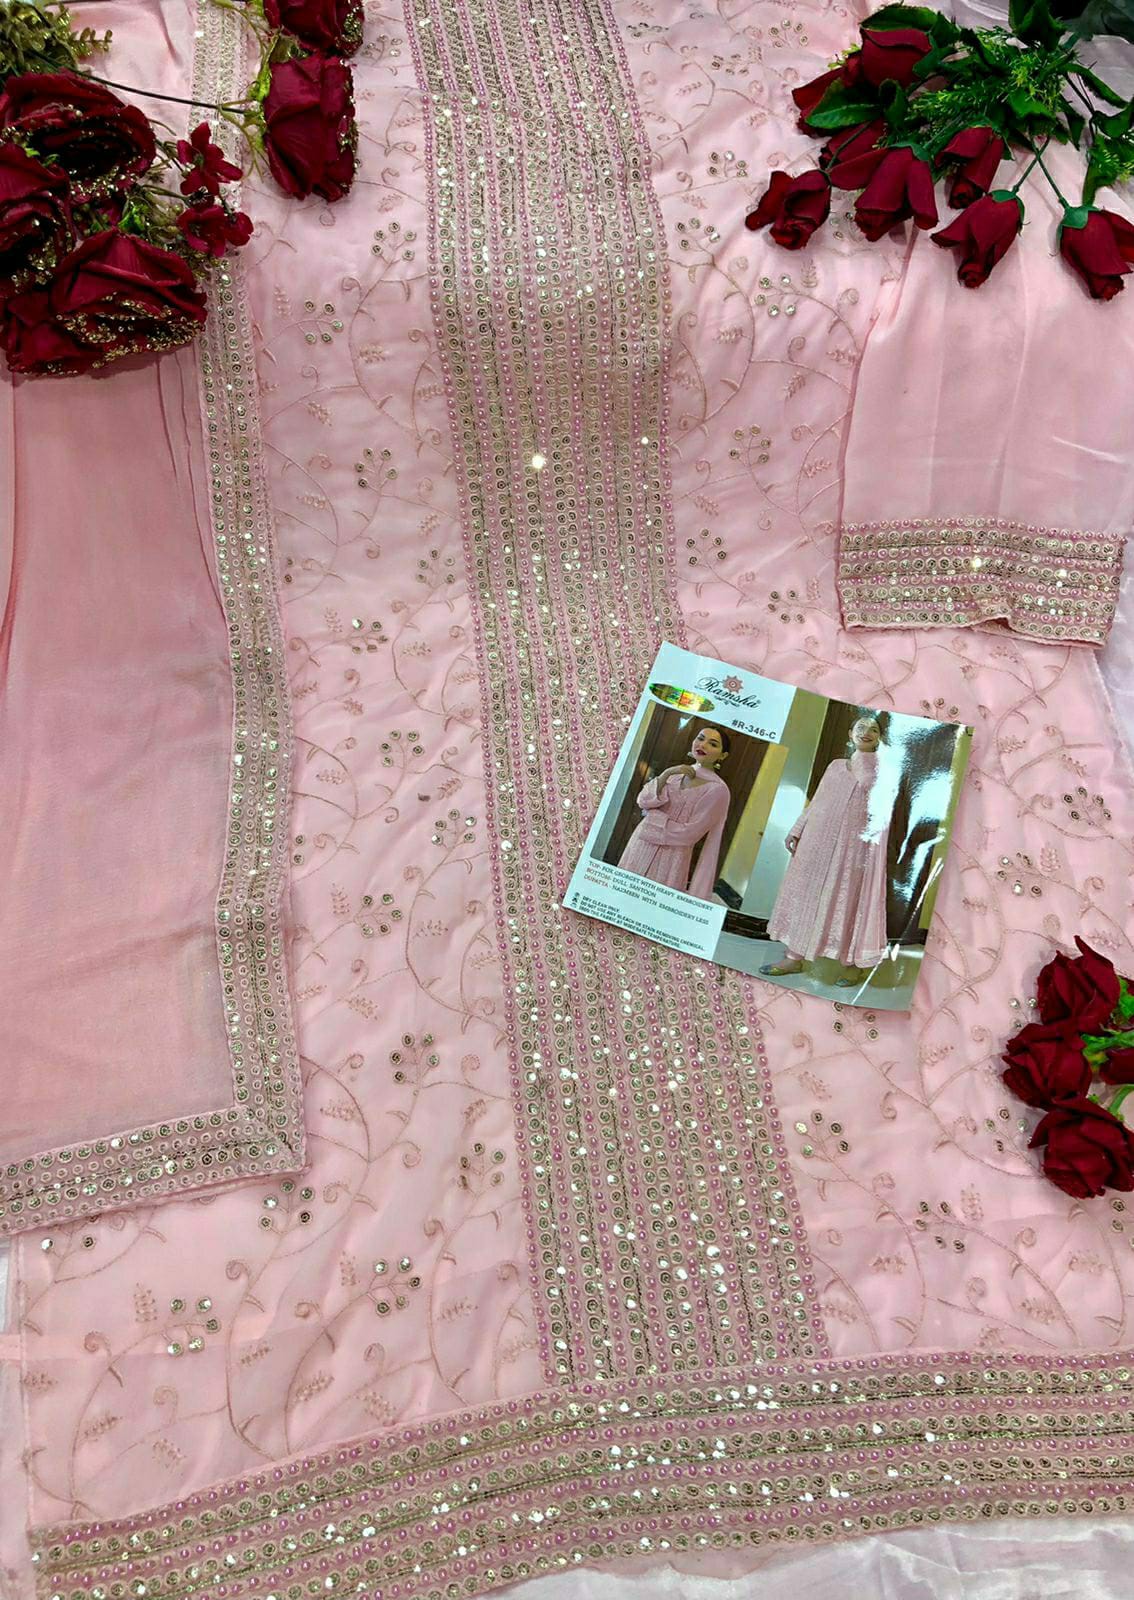 ramsha ramsha r 346 nx georget regal look salwar suit catalog